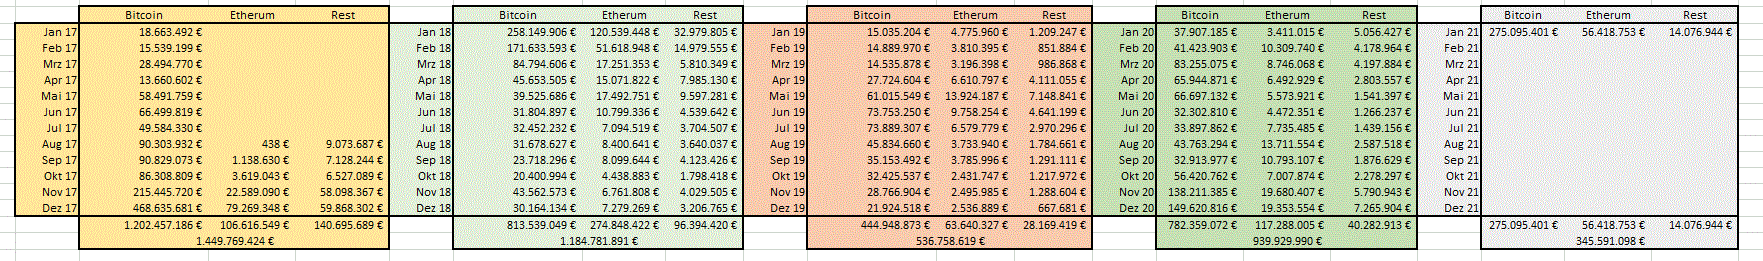 Bitcoin Group SE - Bitcoins & Blockchain 1228244